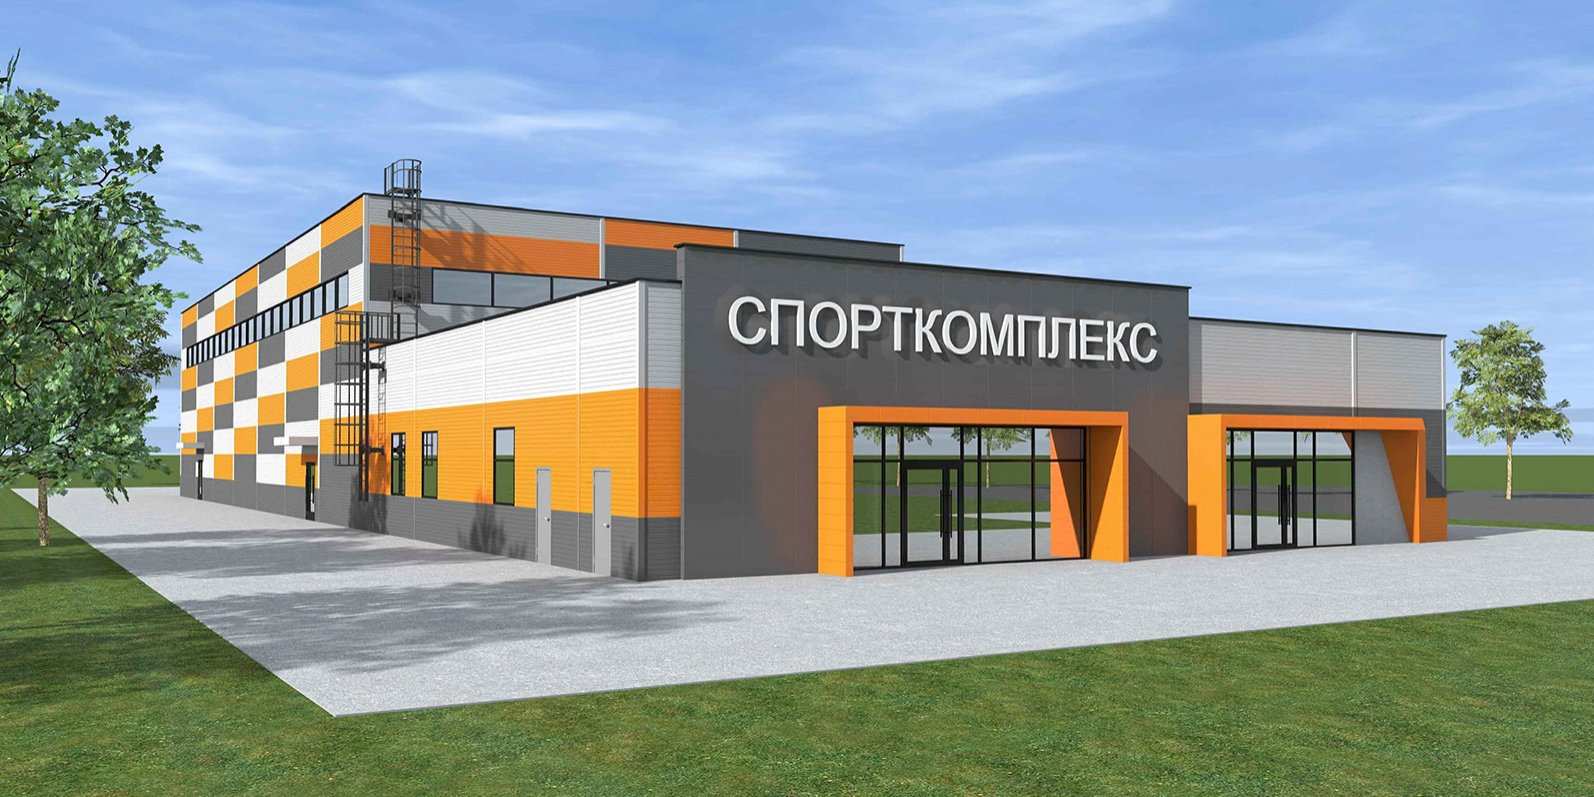 Центр игровых видов спорта построят на Ванеева в Нижнем Новгороде за 160 млн рублей 